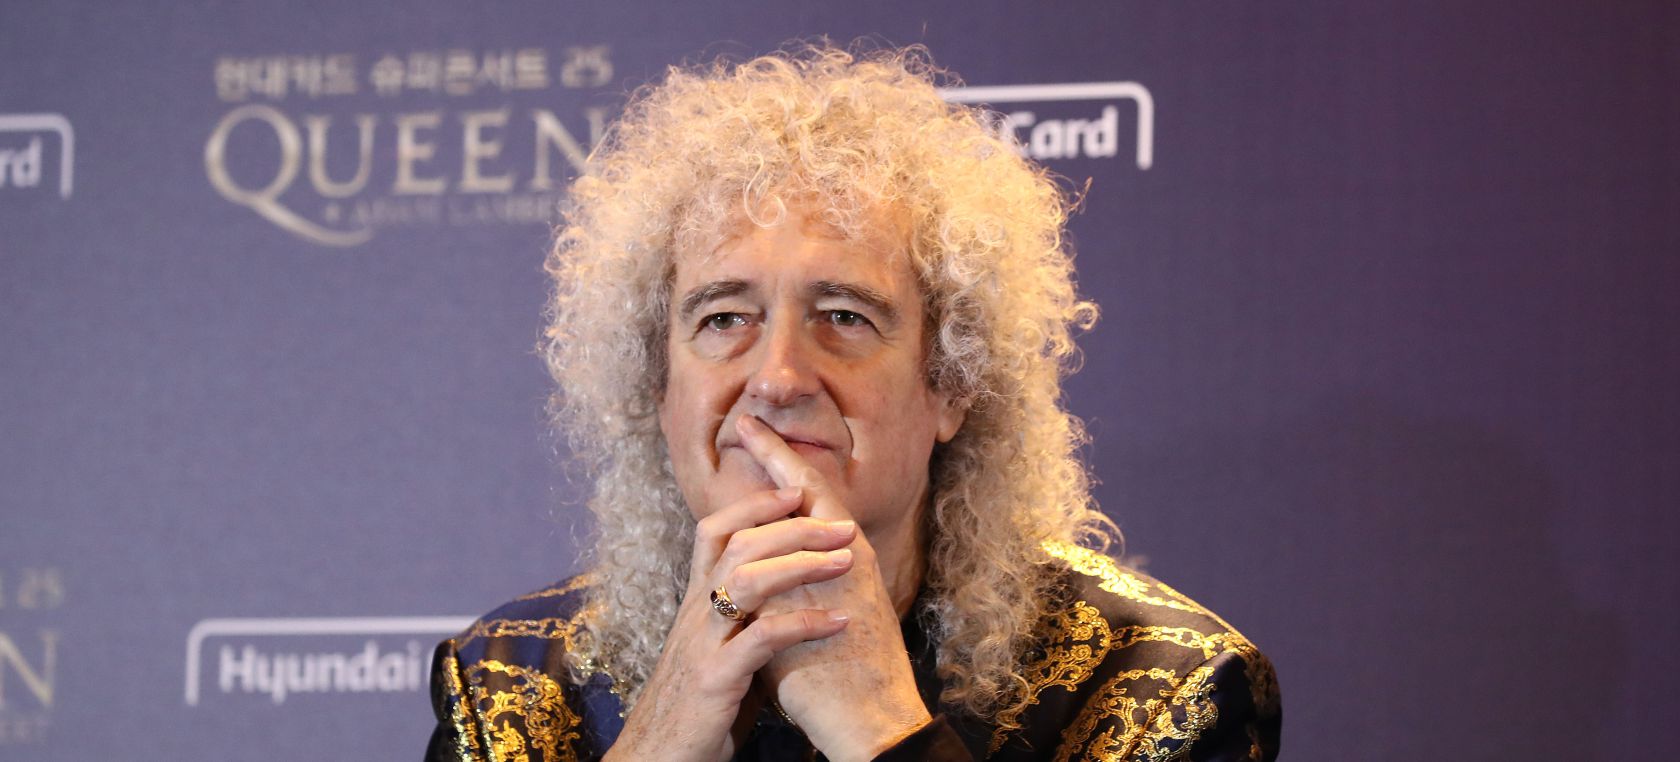 Brian May lanza un perfume inspirado en una canción de Queen